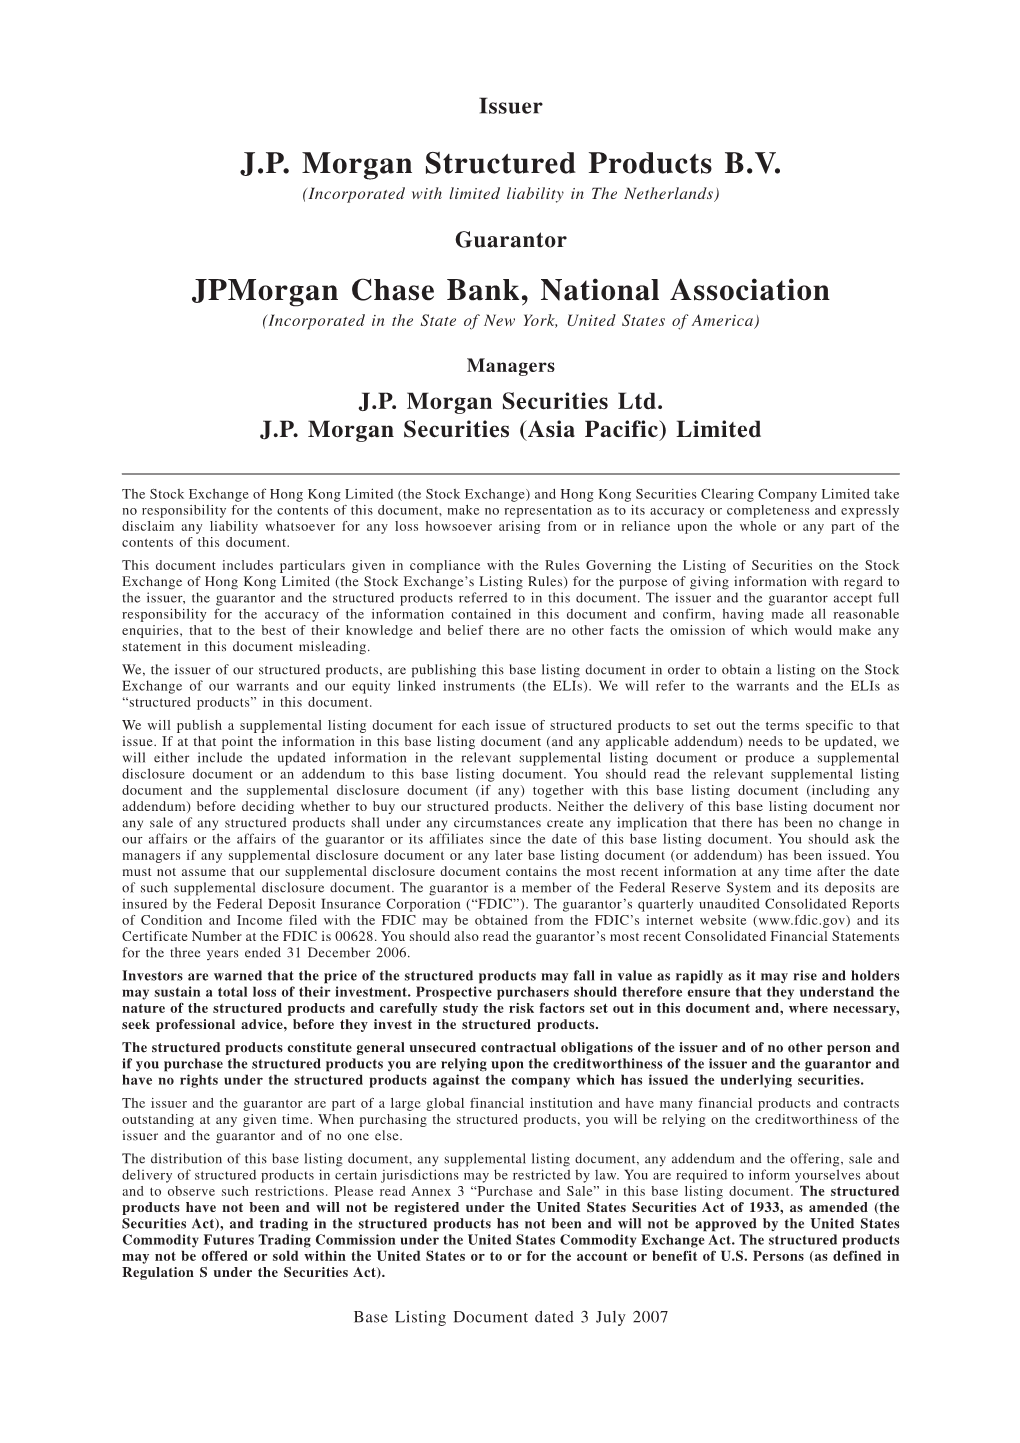 J.P. Morgan Structured Products B.V. Jpmorgan Chase Bank, National